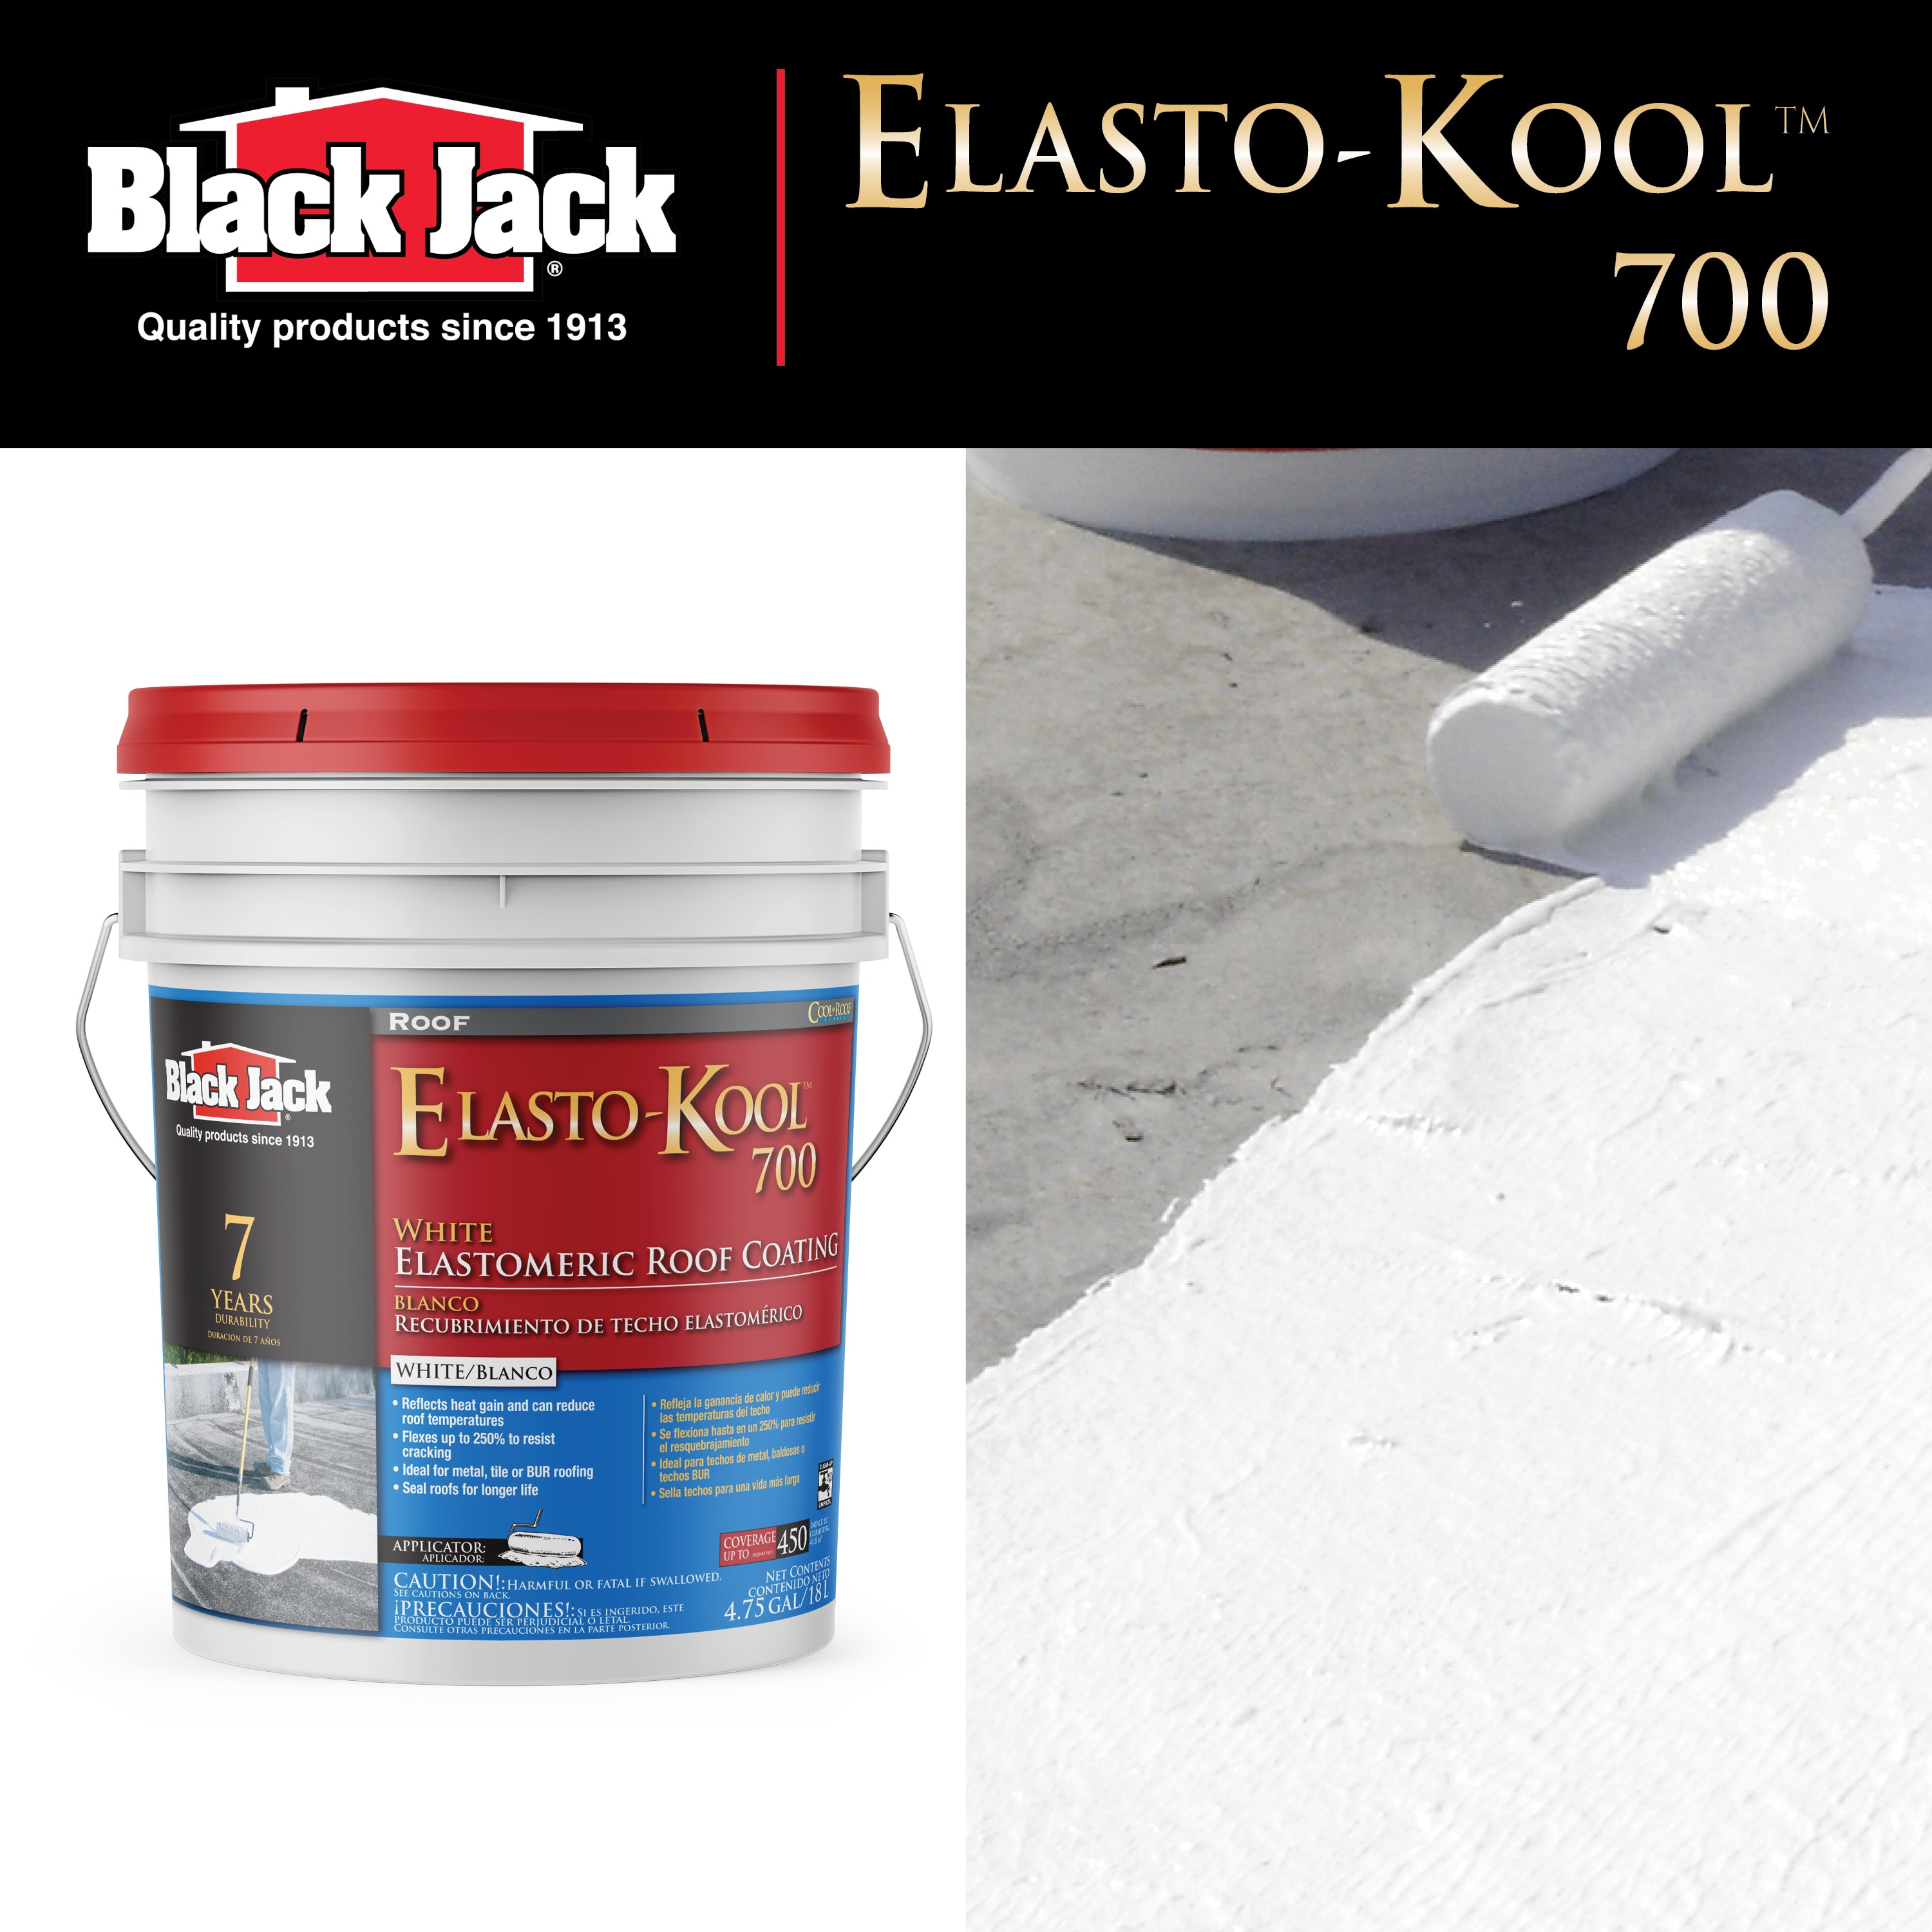 BLACK JACK Elasto-Kool 700 4.75-Gallon White Elastomeric Reflective Roof  Coating (7-year Limited Warranty) at